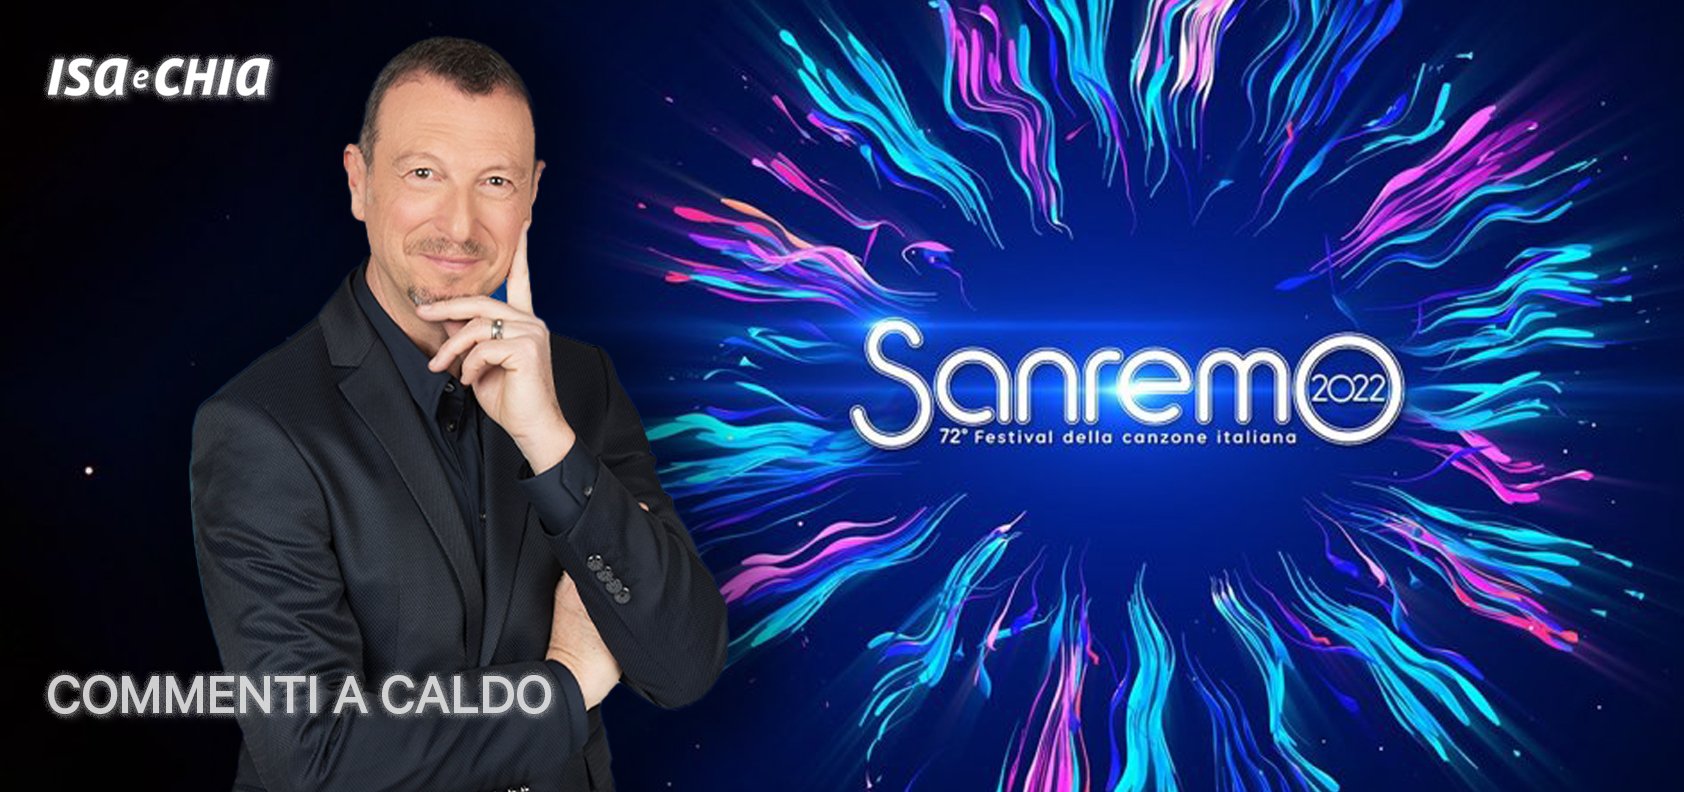 Sanremo 2022, la terza serata: commenti a caldo